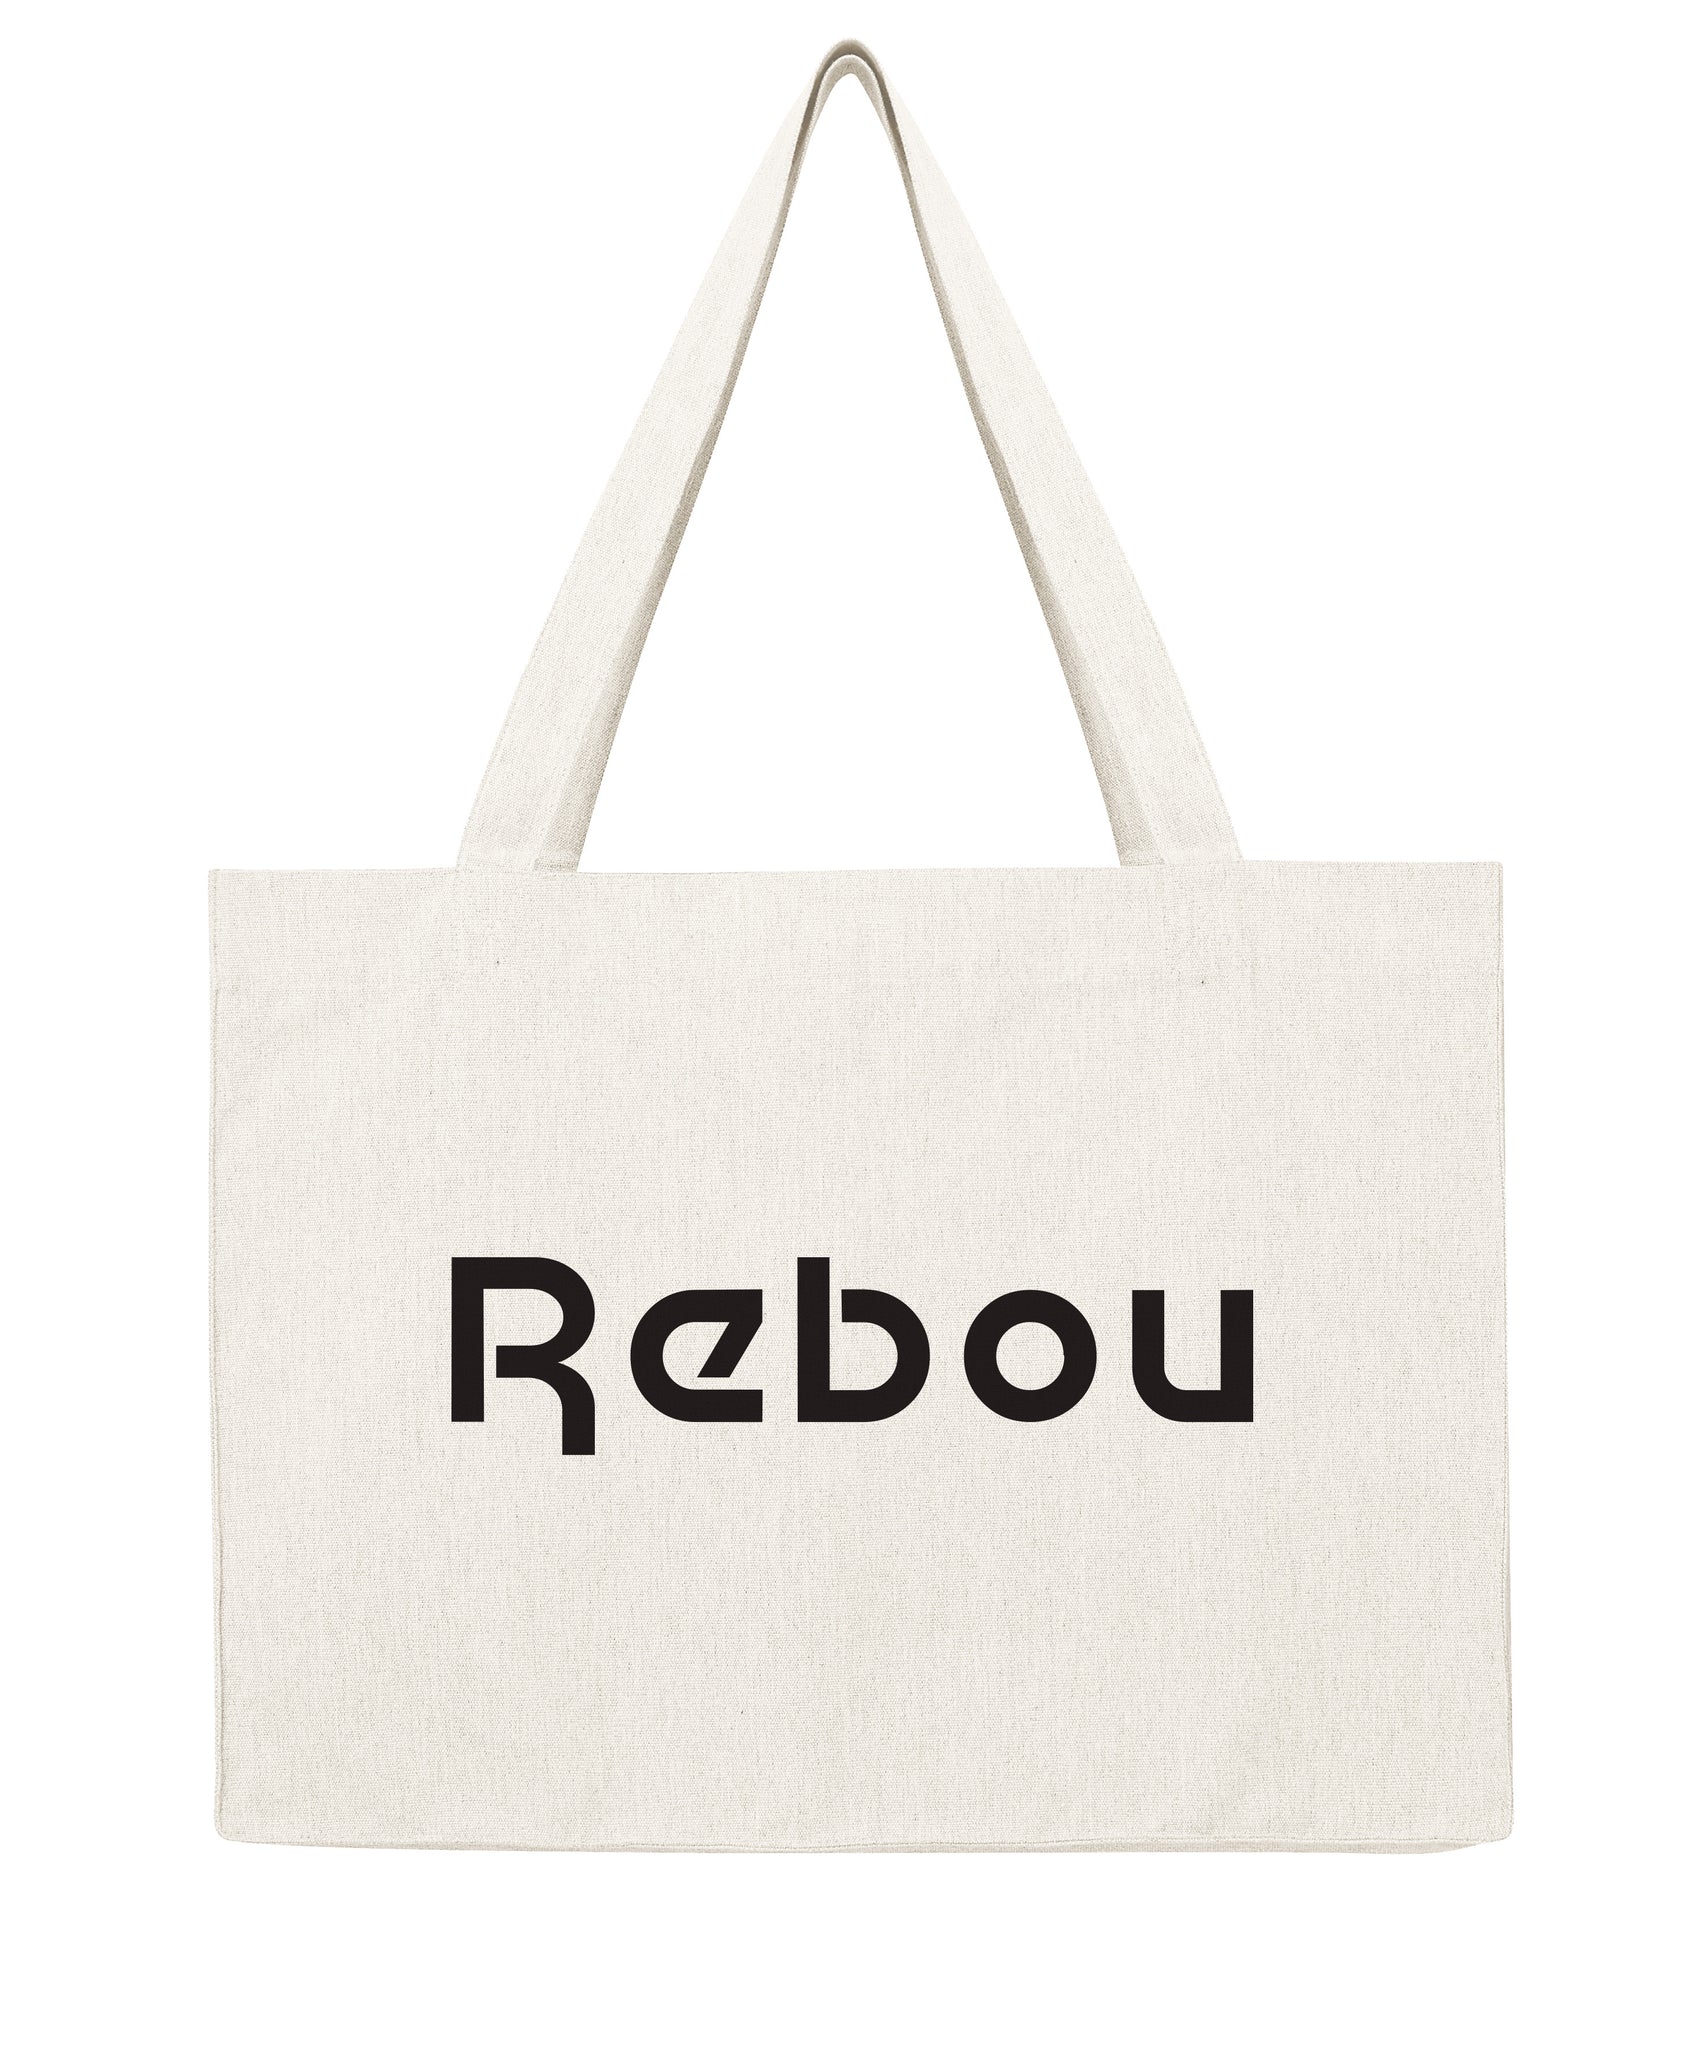 Rebou - Shopping bag-Sacs-Atelier Amelot